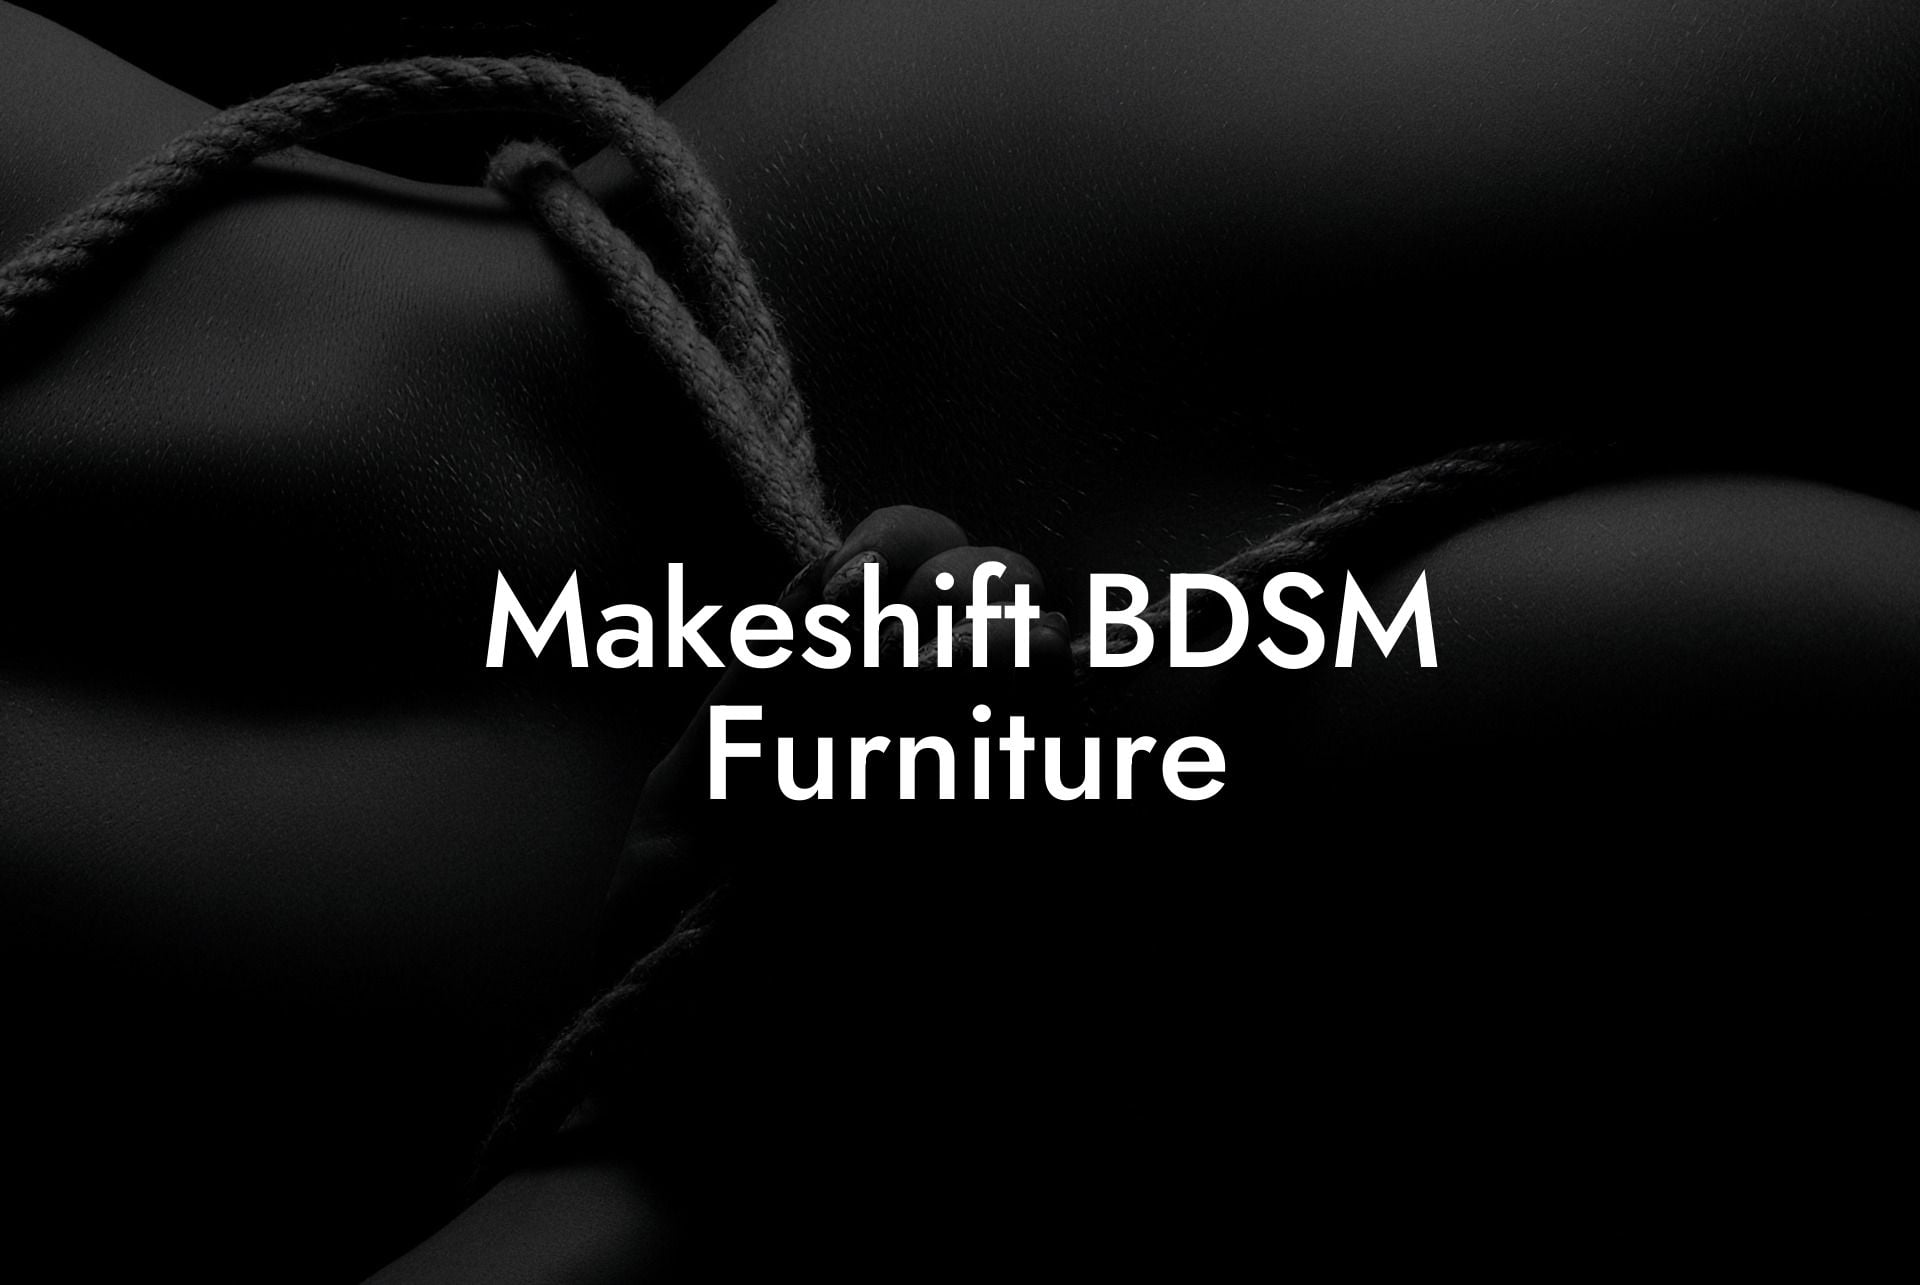 Makeshift BDSM Furniture